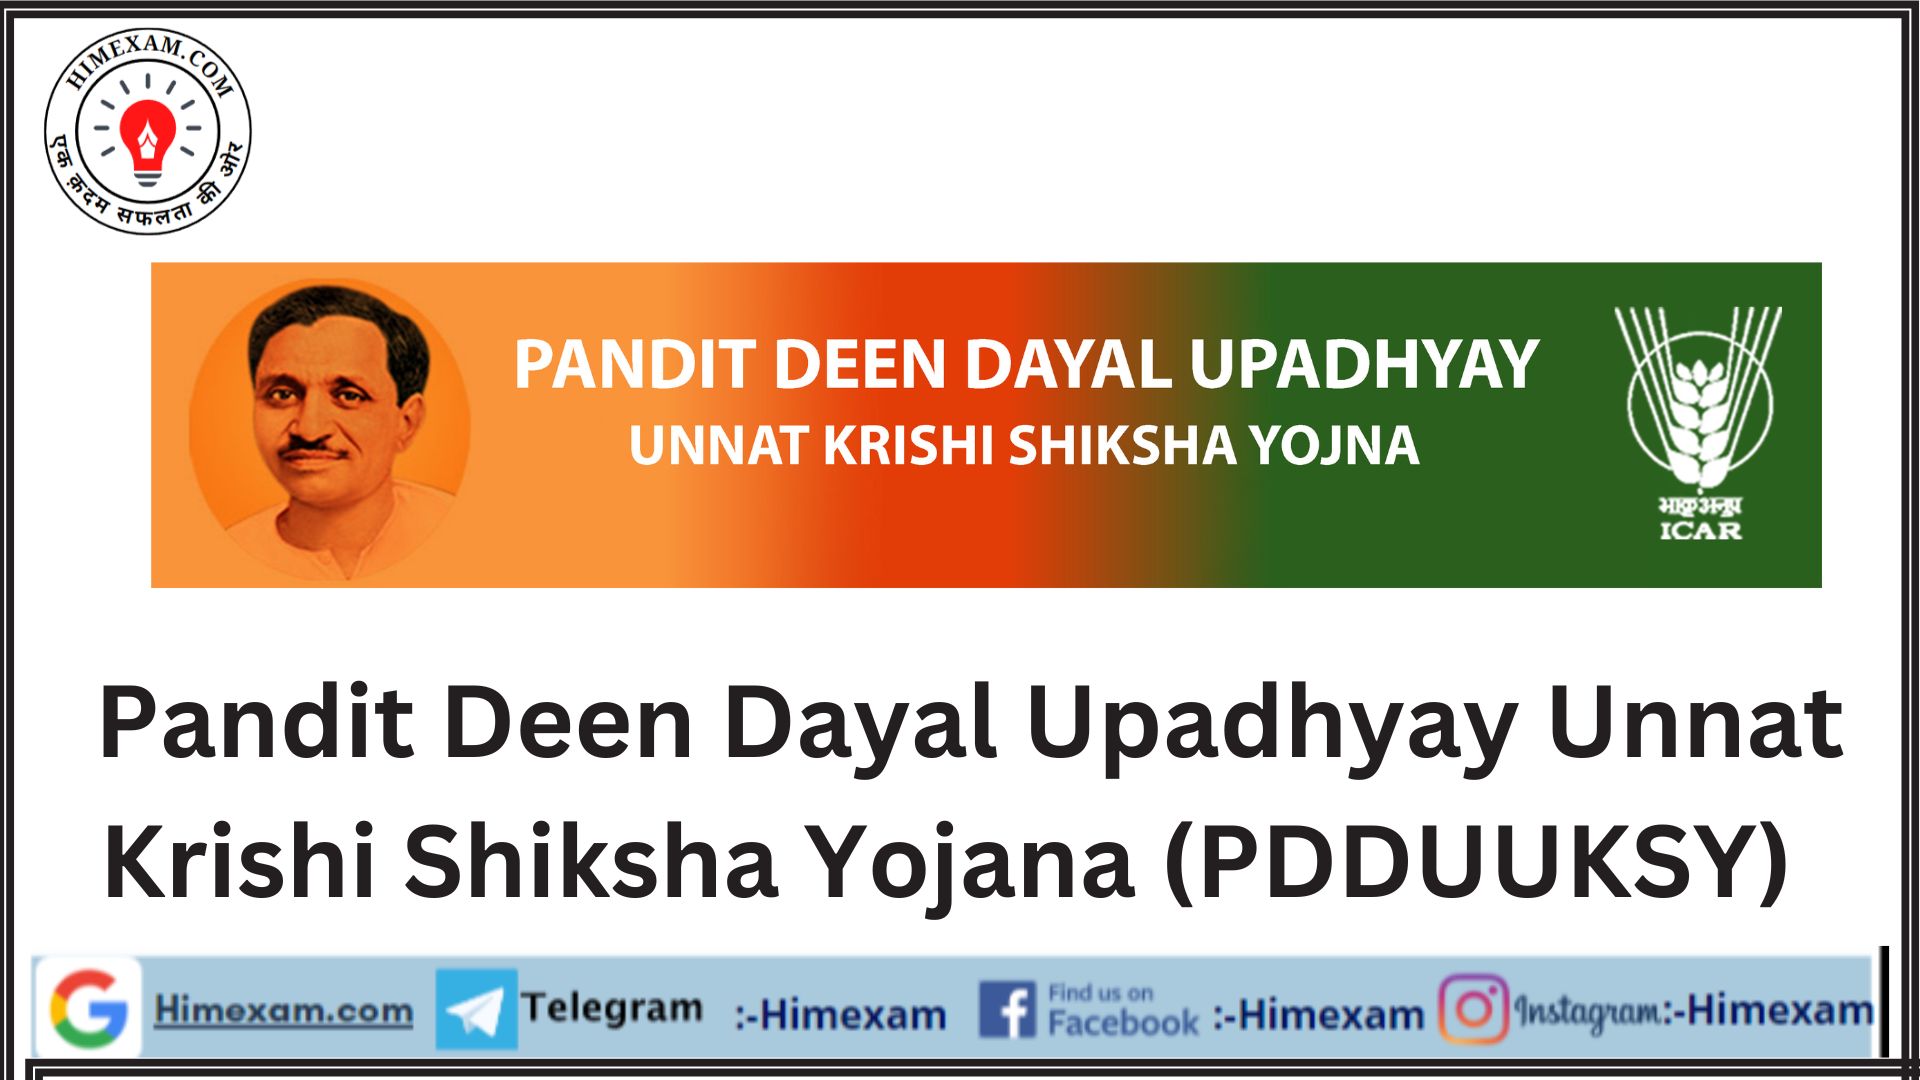 Pandit Deen Dayal Upadhyay Unnat Krishi Shiksha Yojana (PDDUUKSY)